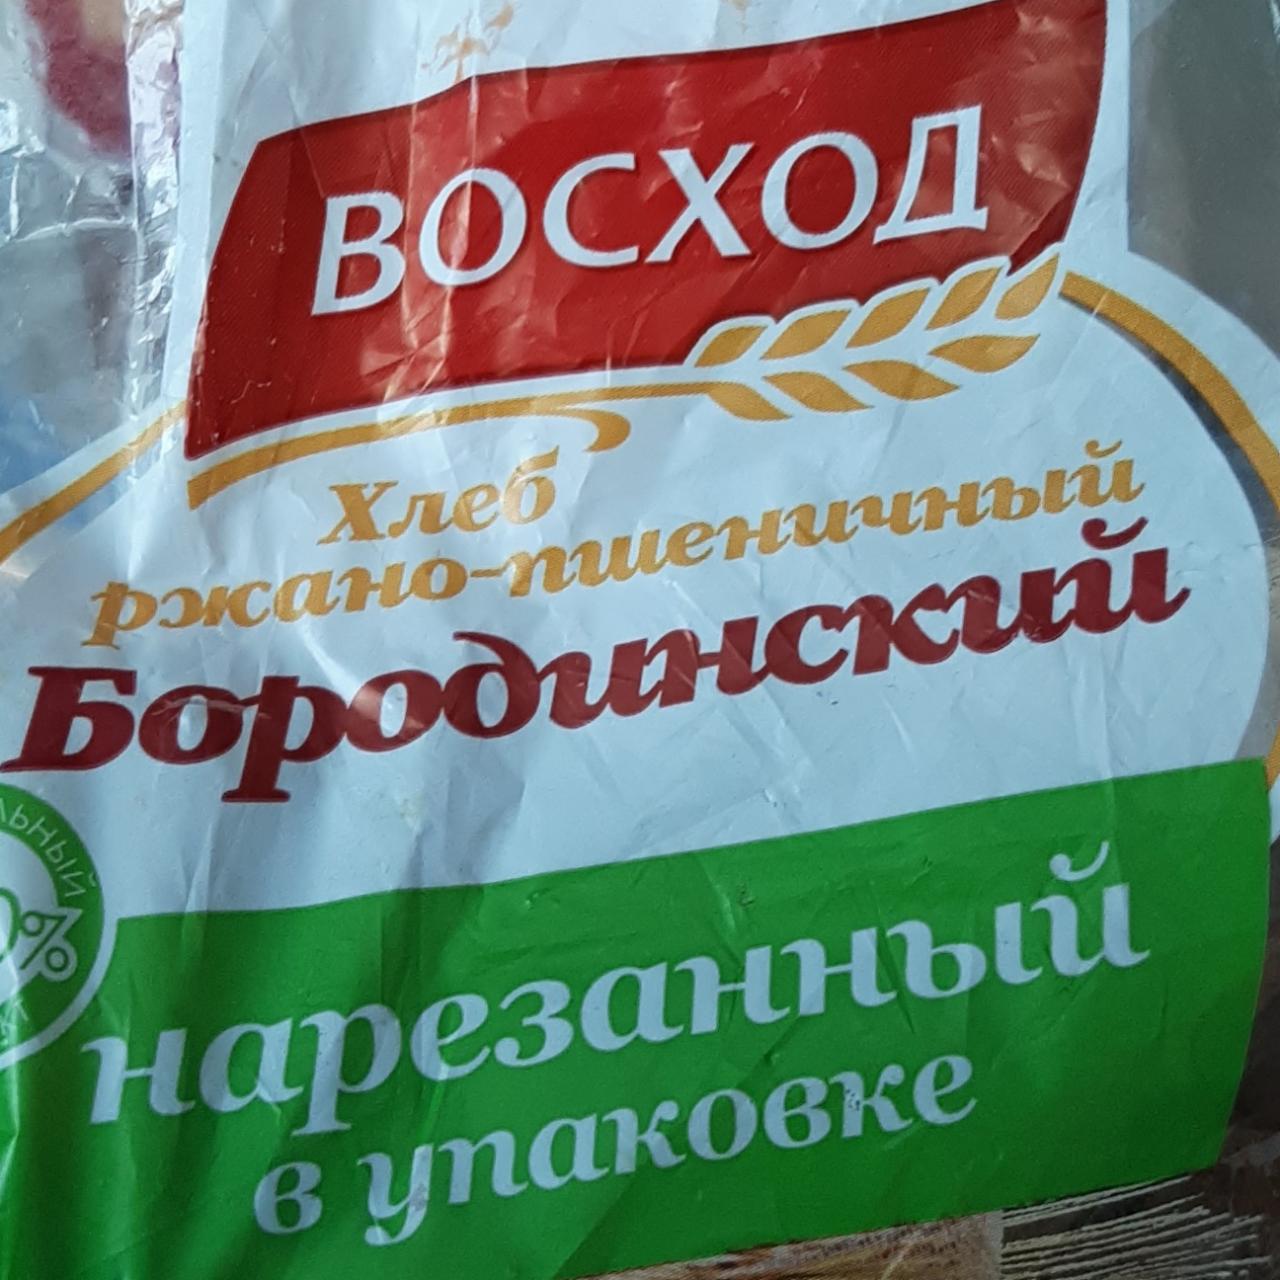 Фото - Хлеб ржано-пшеничный Бородинский Восход